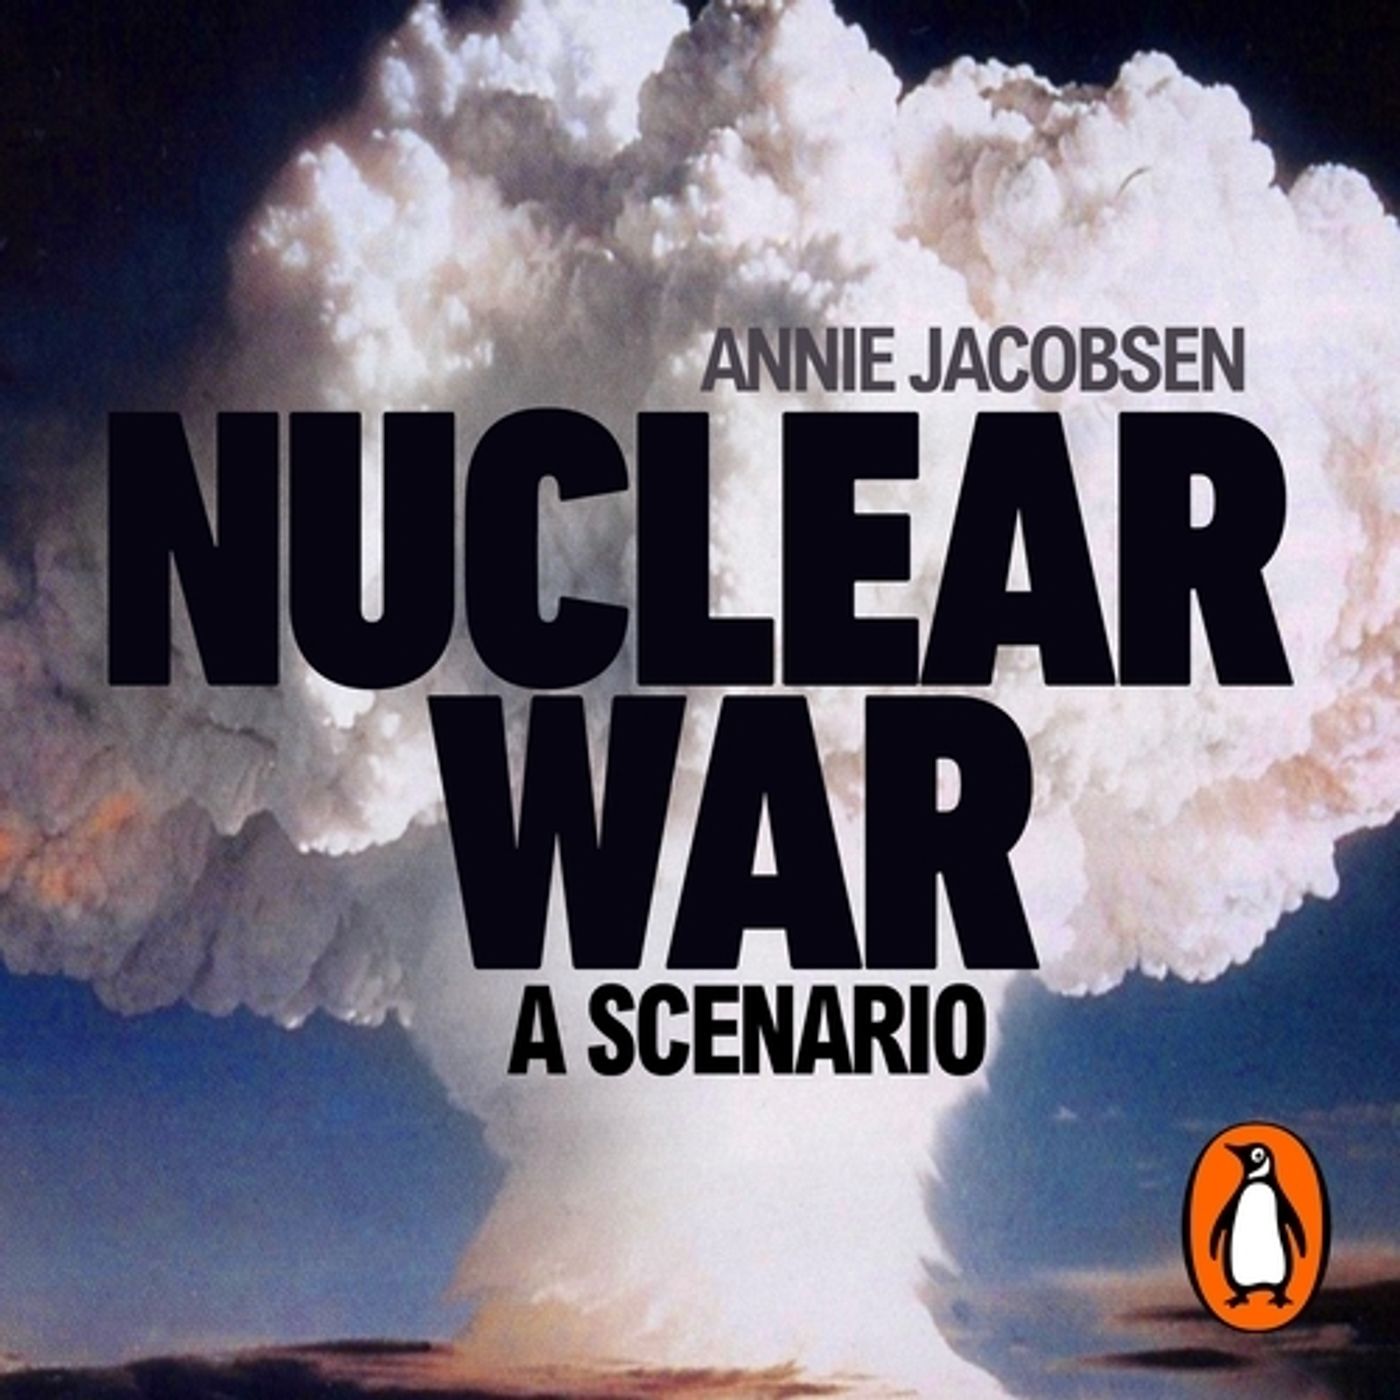 Annie Jacobsen: Nuclear War